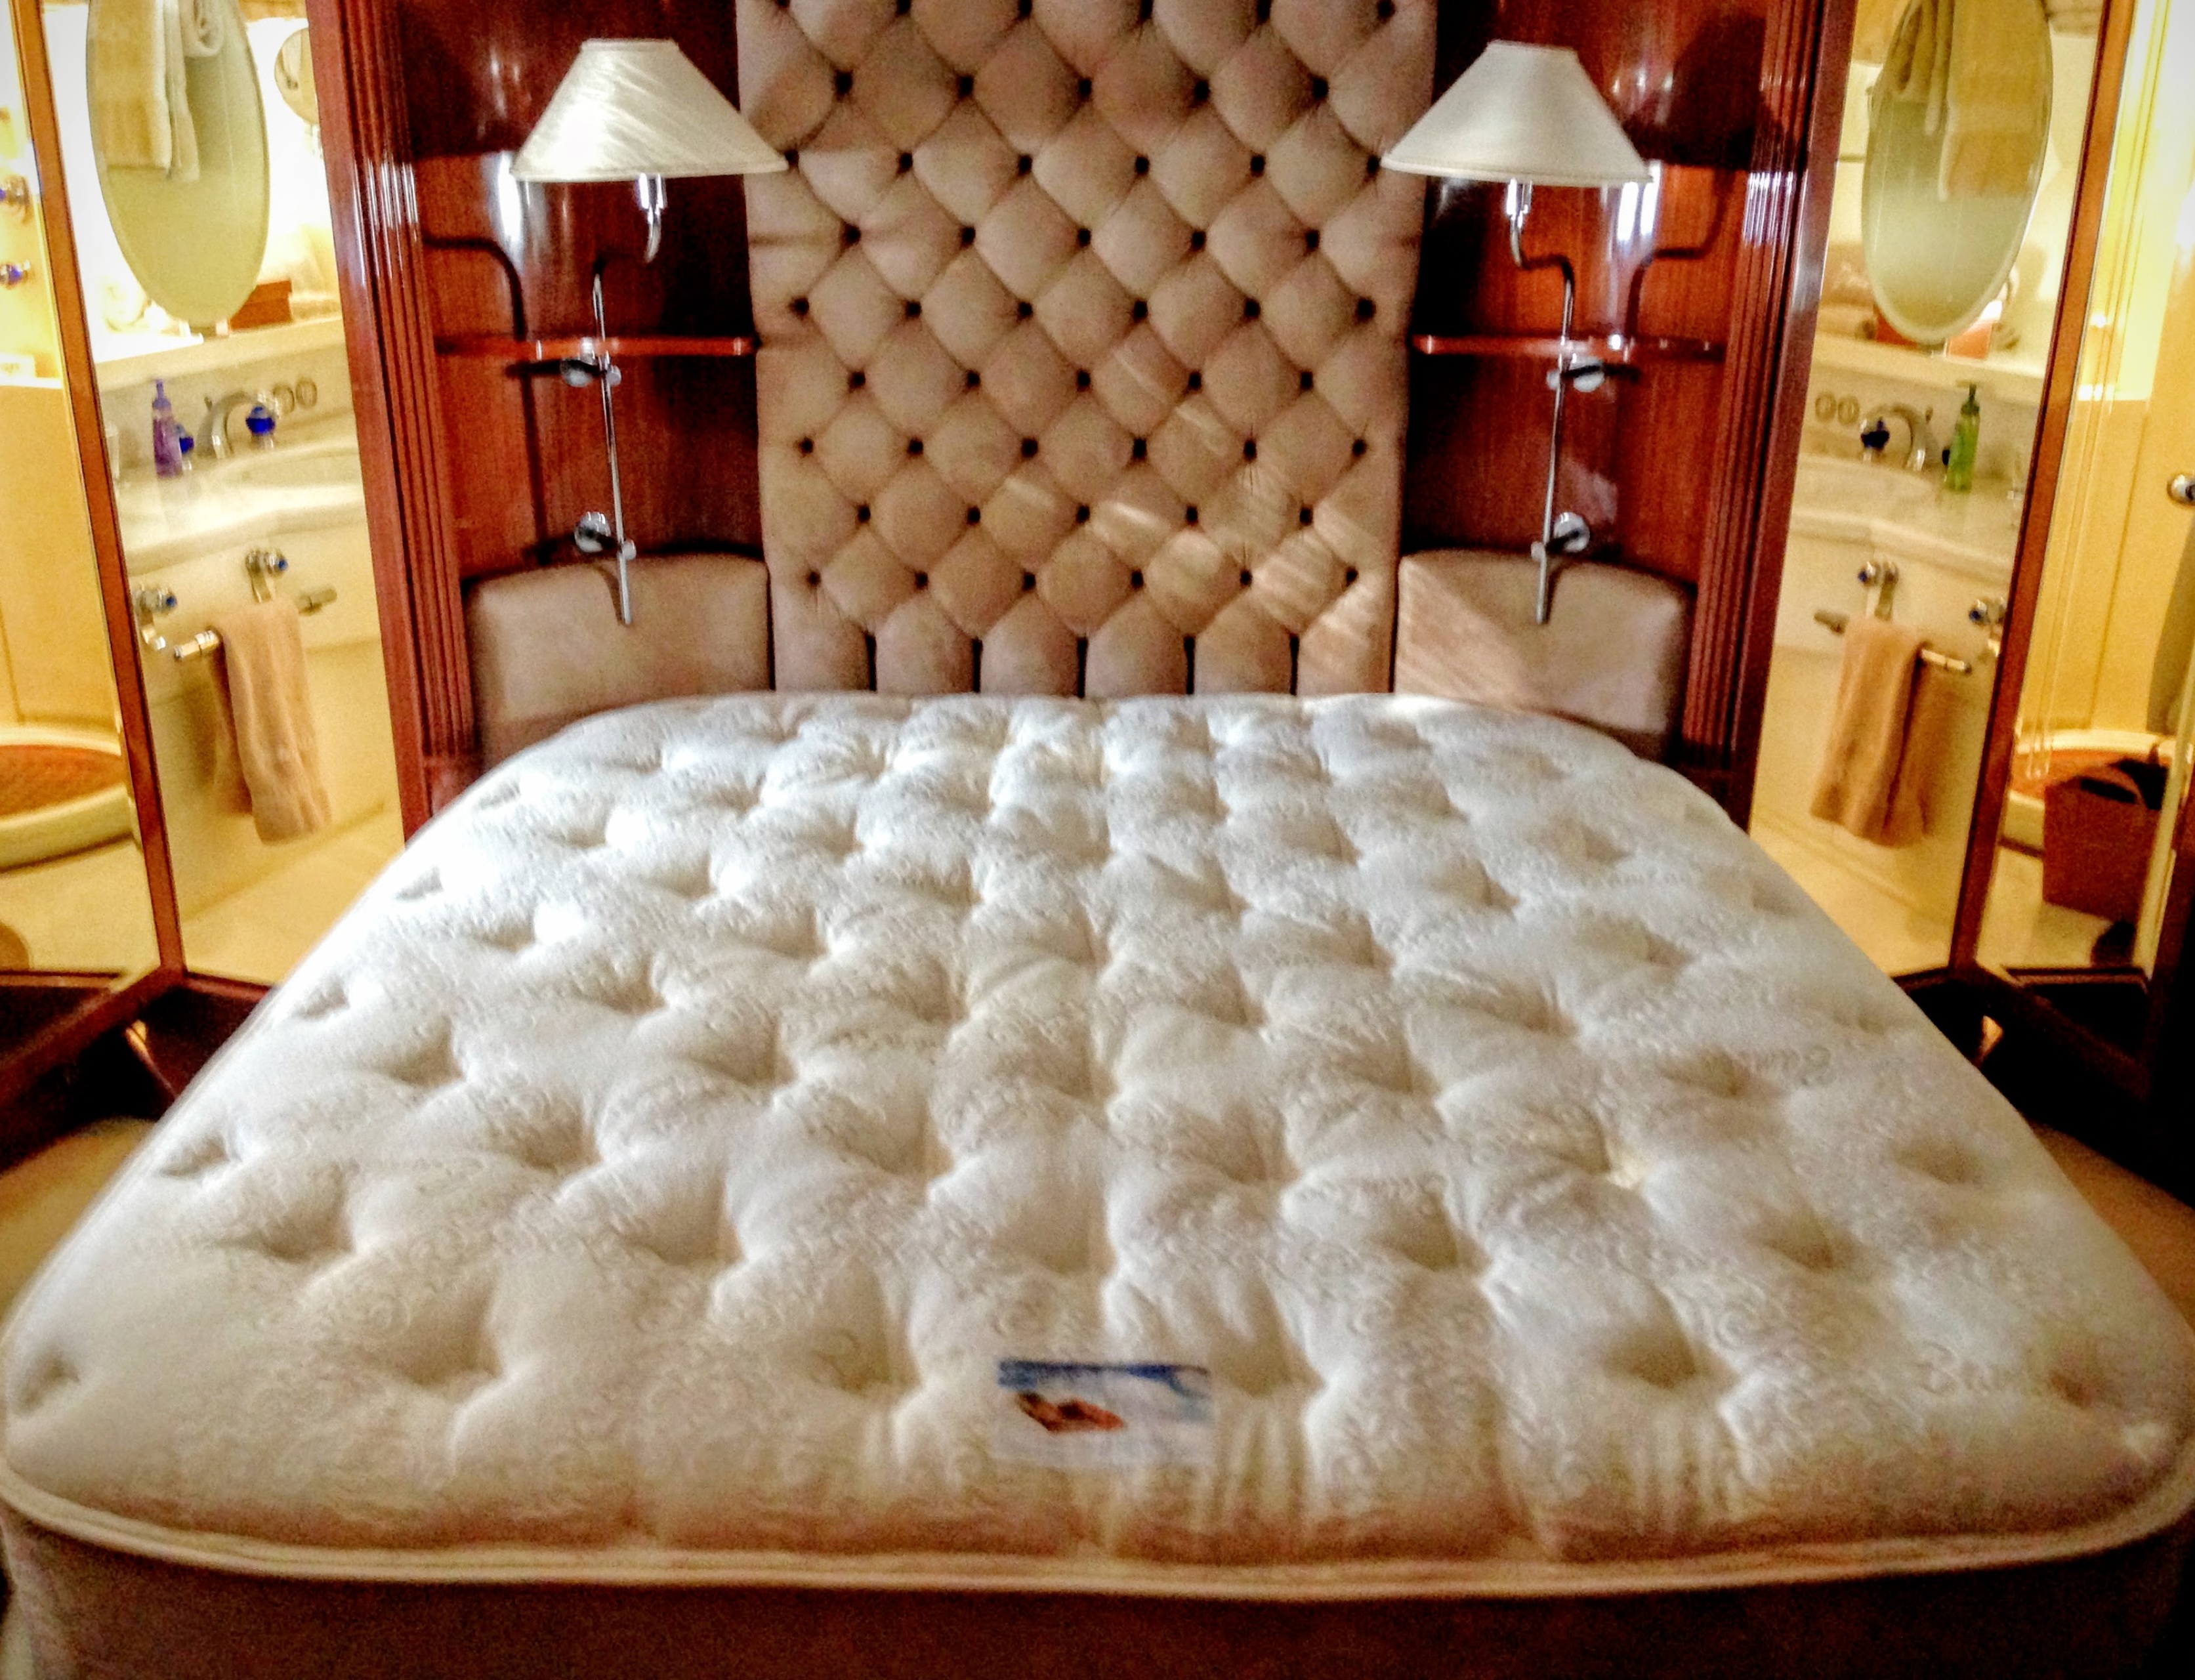 mattress comforter for beds